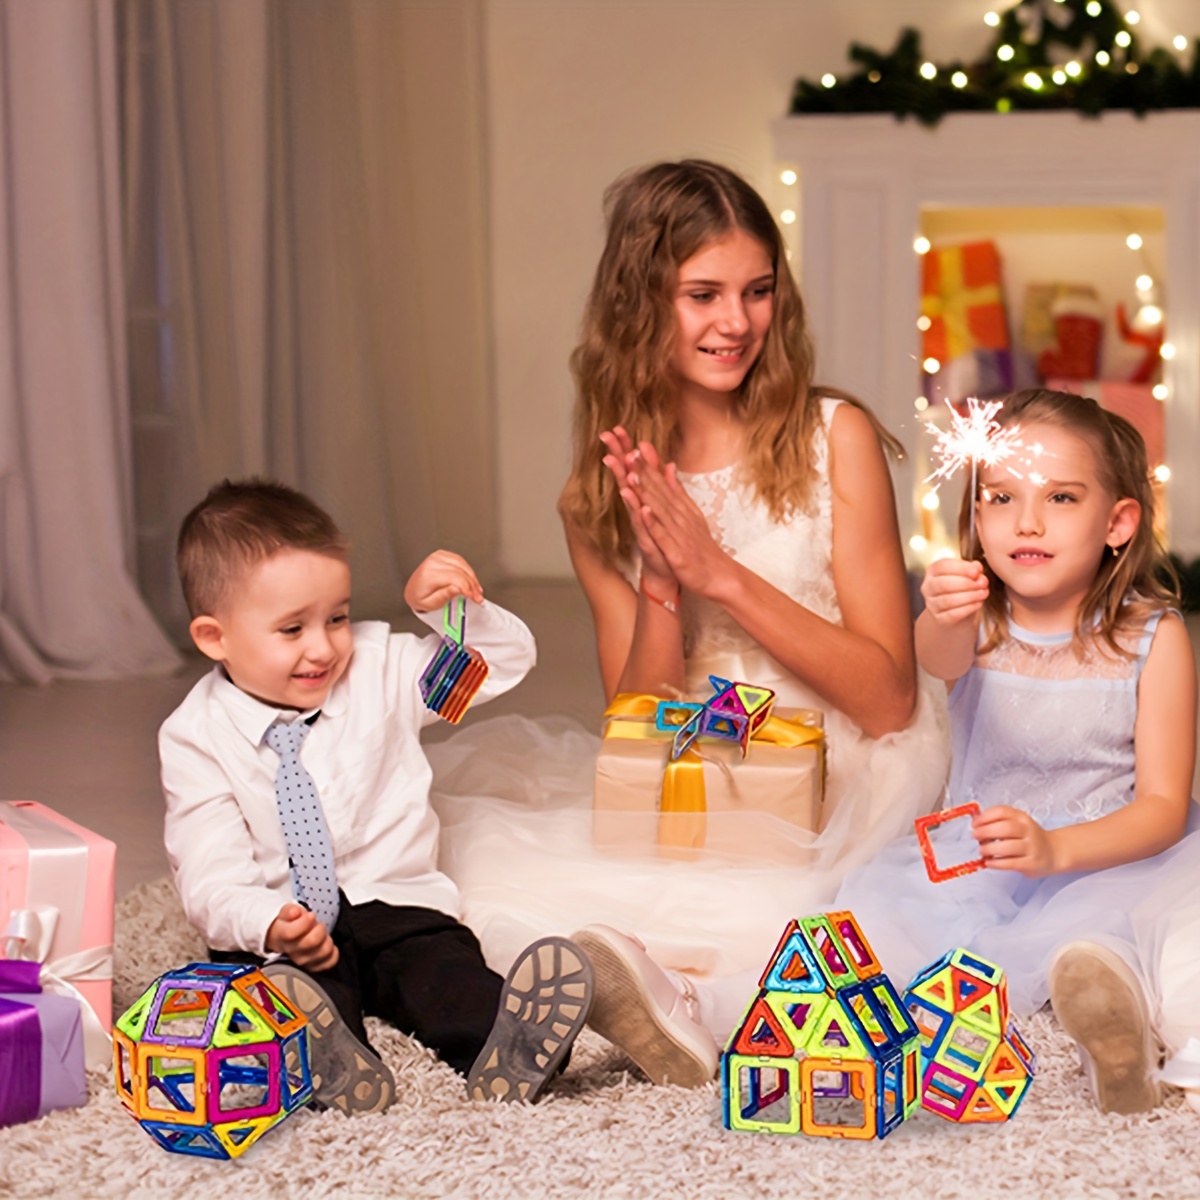 38pcs Jeu Bloc de Construction Magnétique Enfant Cadeaux D'anniversaire de Noël  pour 3 4 5 6 ans Filles Garcons